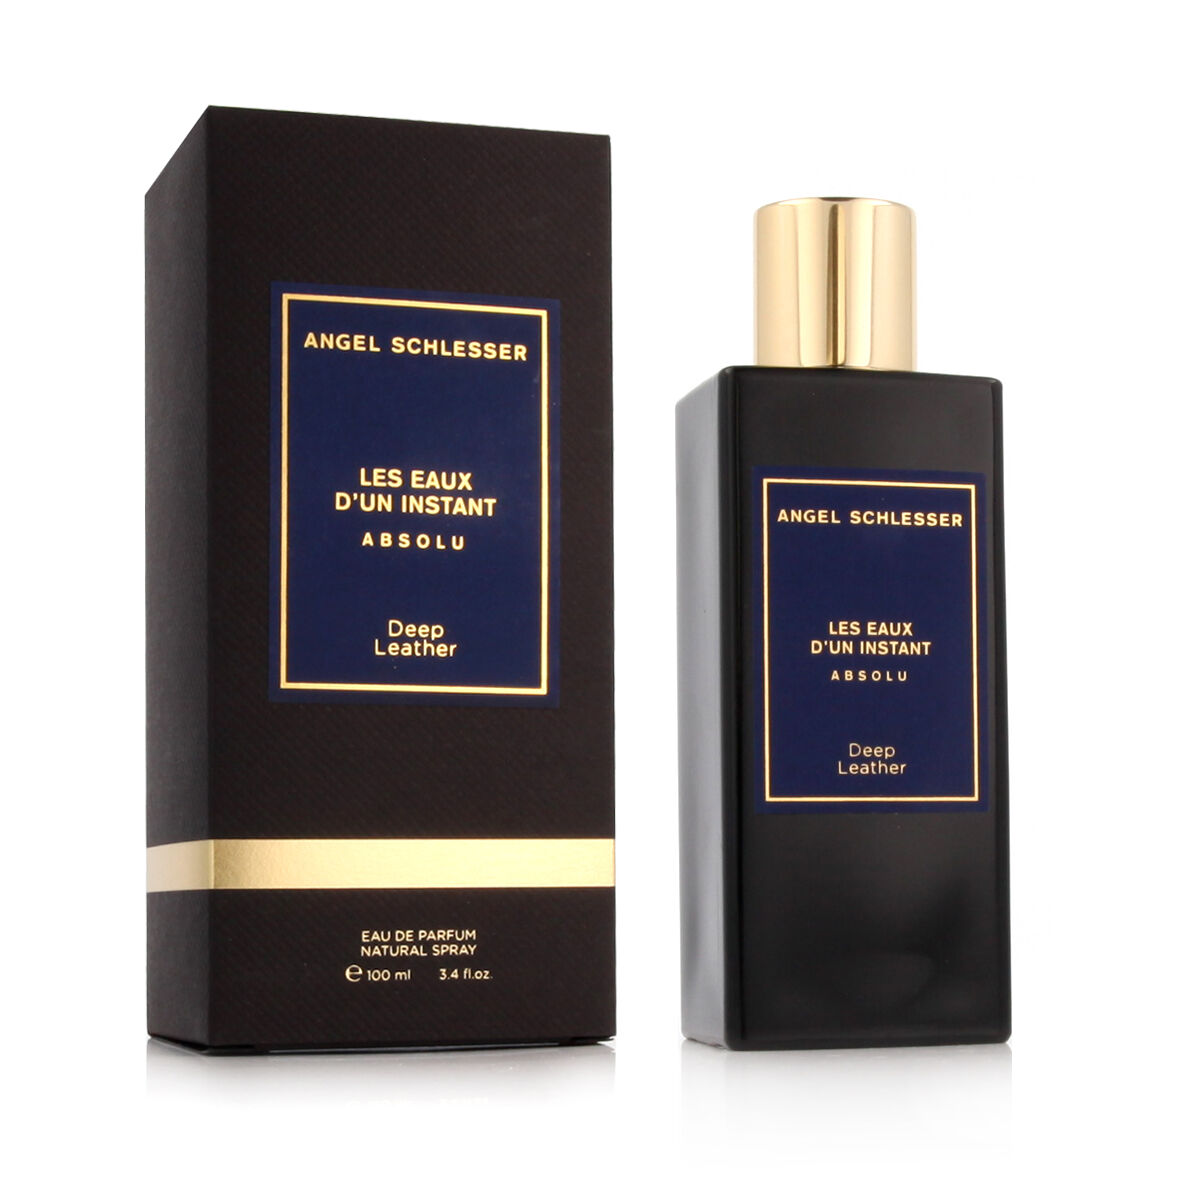 Unisex parfume Angel Schlesser EDP Les Eaux D'un Instant Absolut Deep Leather (100 ml)